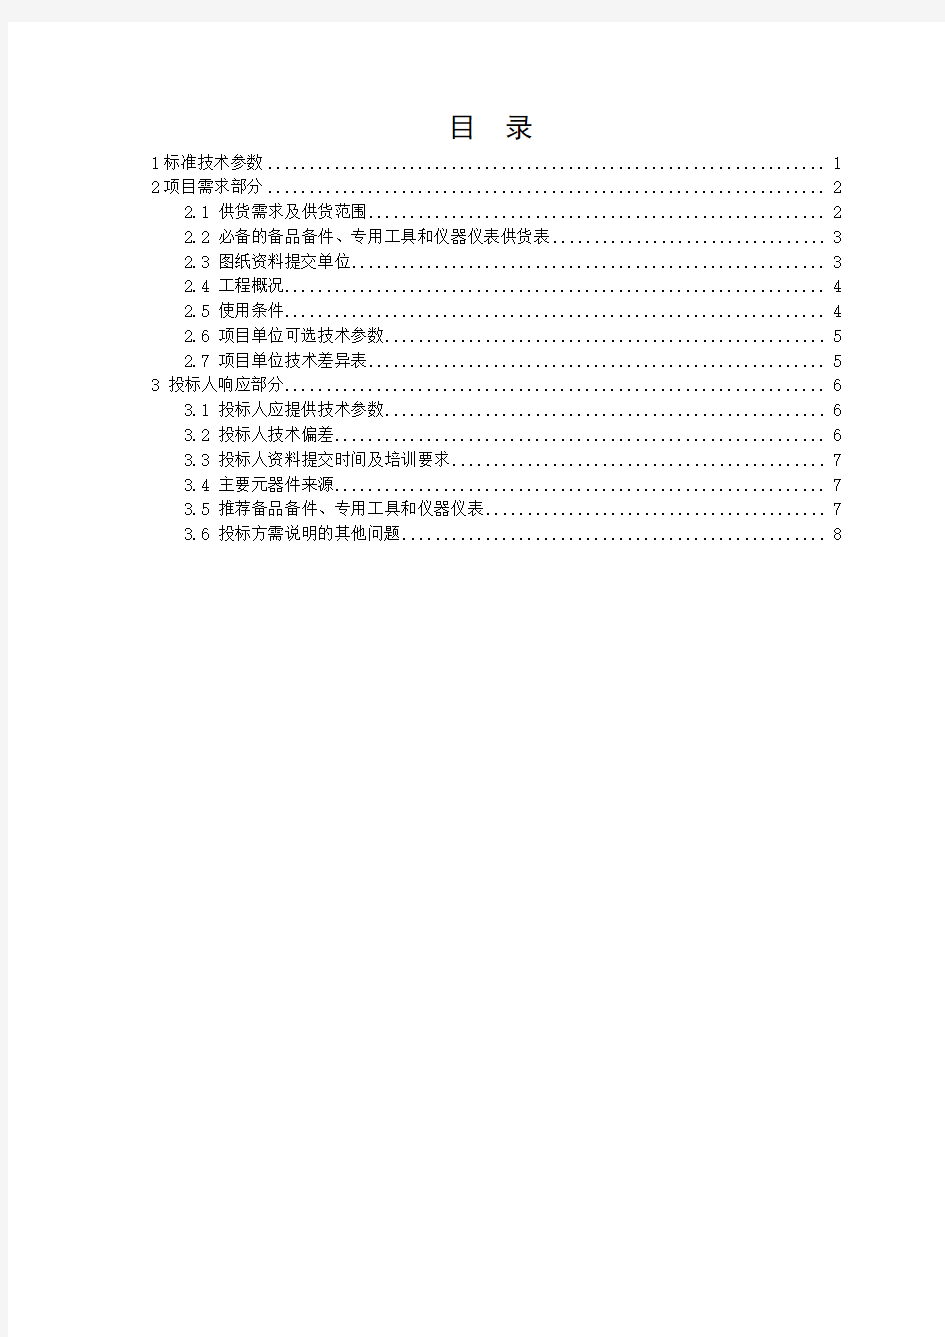 中国南方电网有限责任公司电动汽车交流充电桩技术规范书(专用部分)